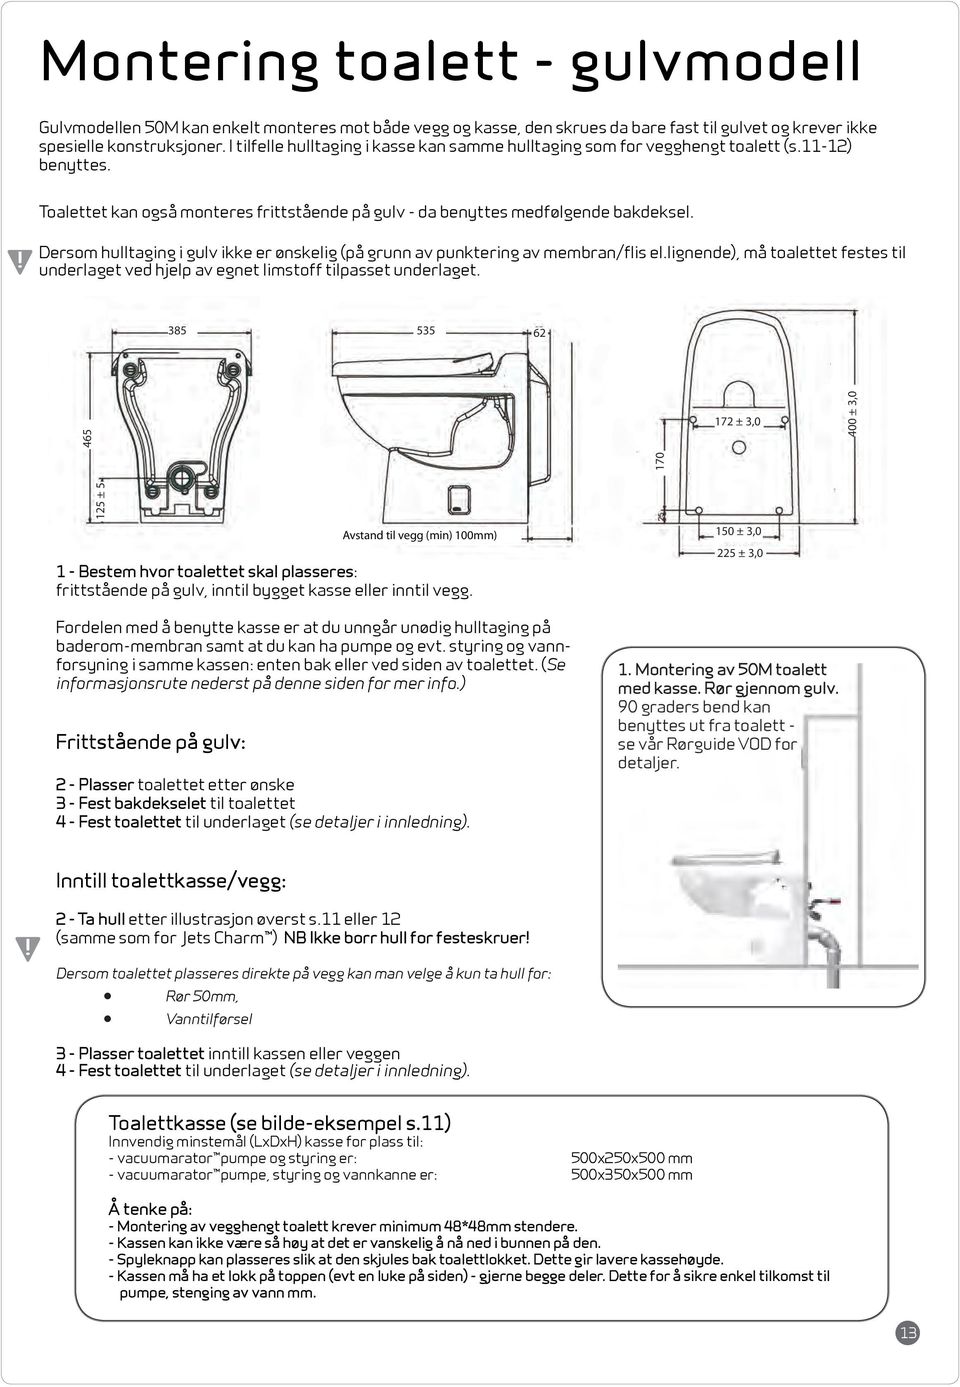 Dersom hulltaging i gulv ikke er ønskelig (på grunn av punktering av membran/flis el.lignende), må toalettet festes til underlaget ved hjelp av egnet limstoff tilpasset underlaget.